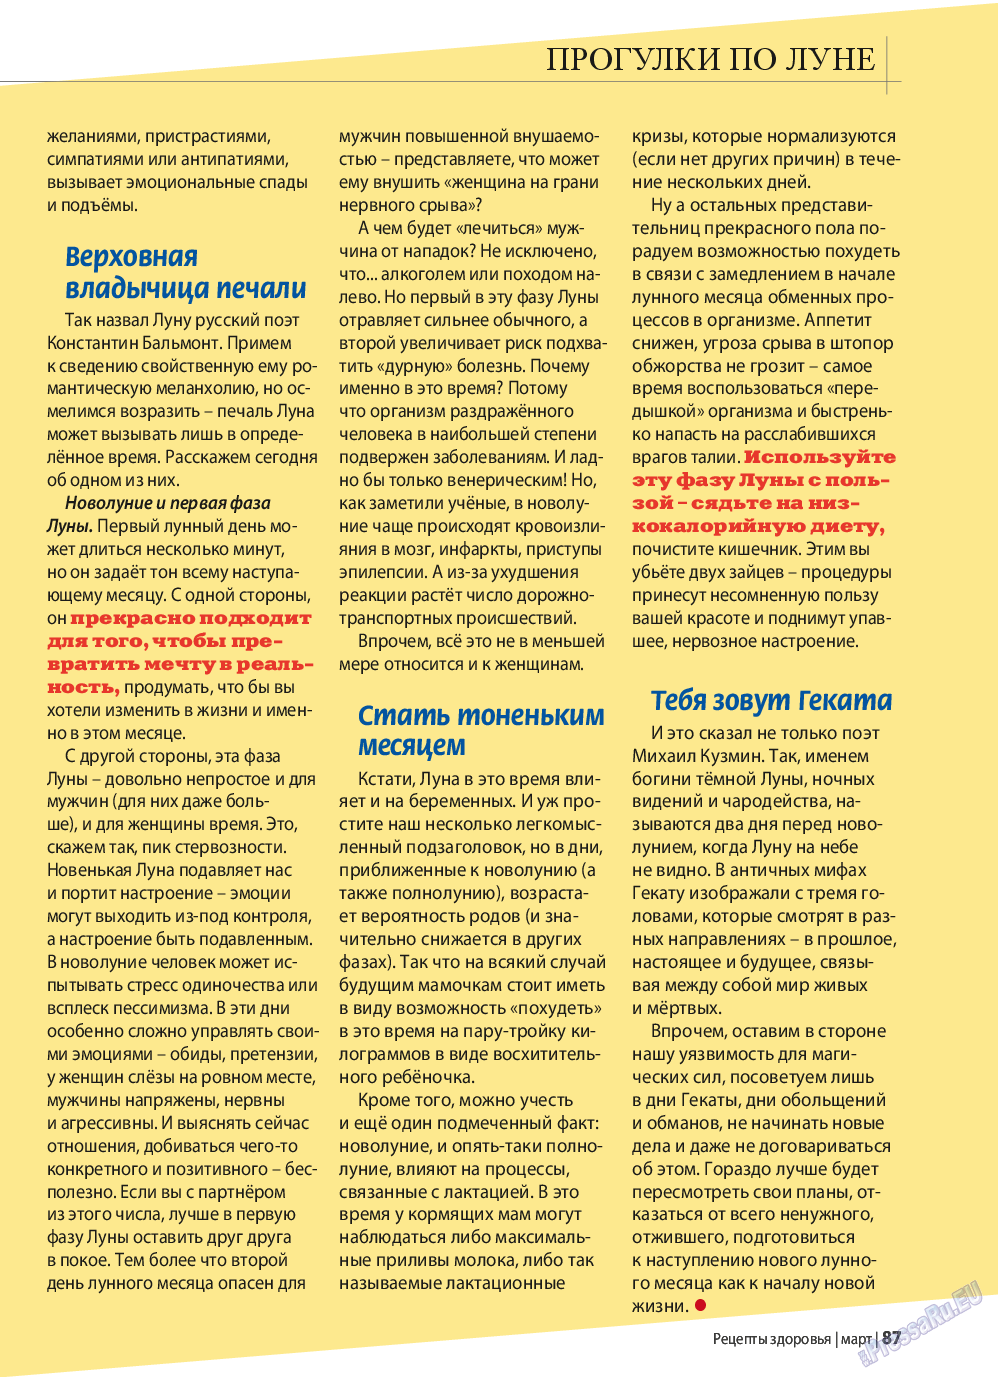 Рецепты здоровья, журнал. 2015 №70 стр.87